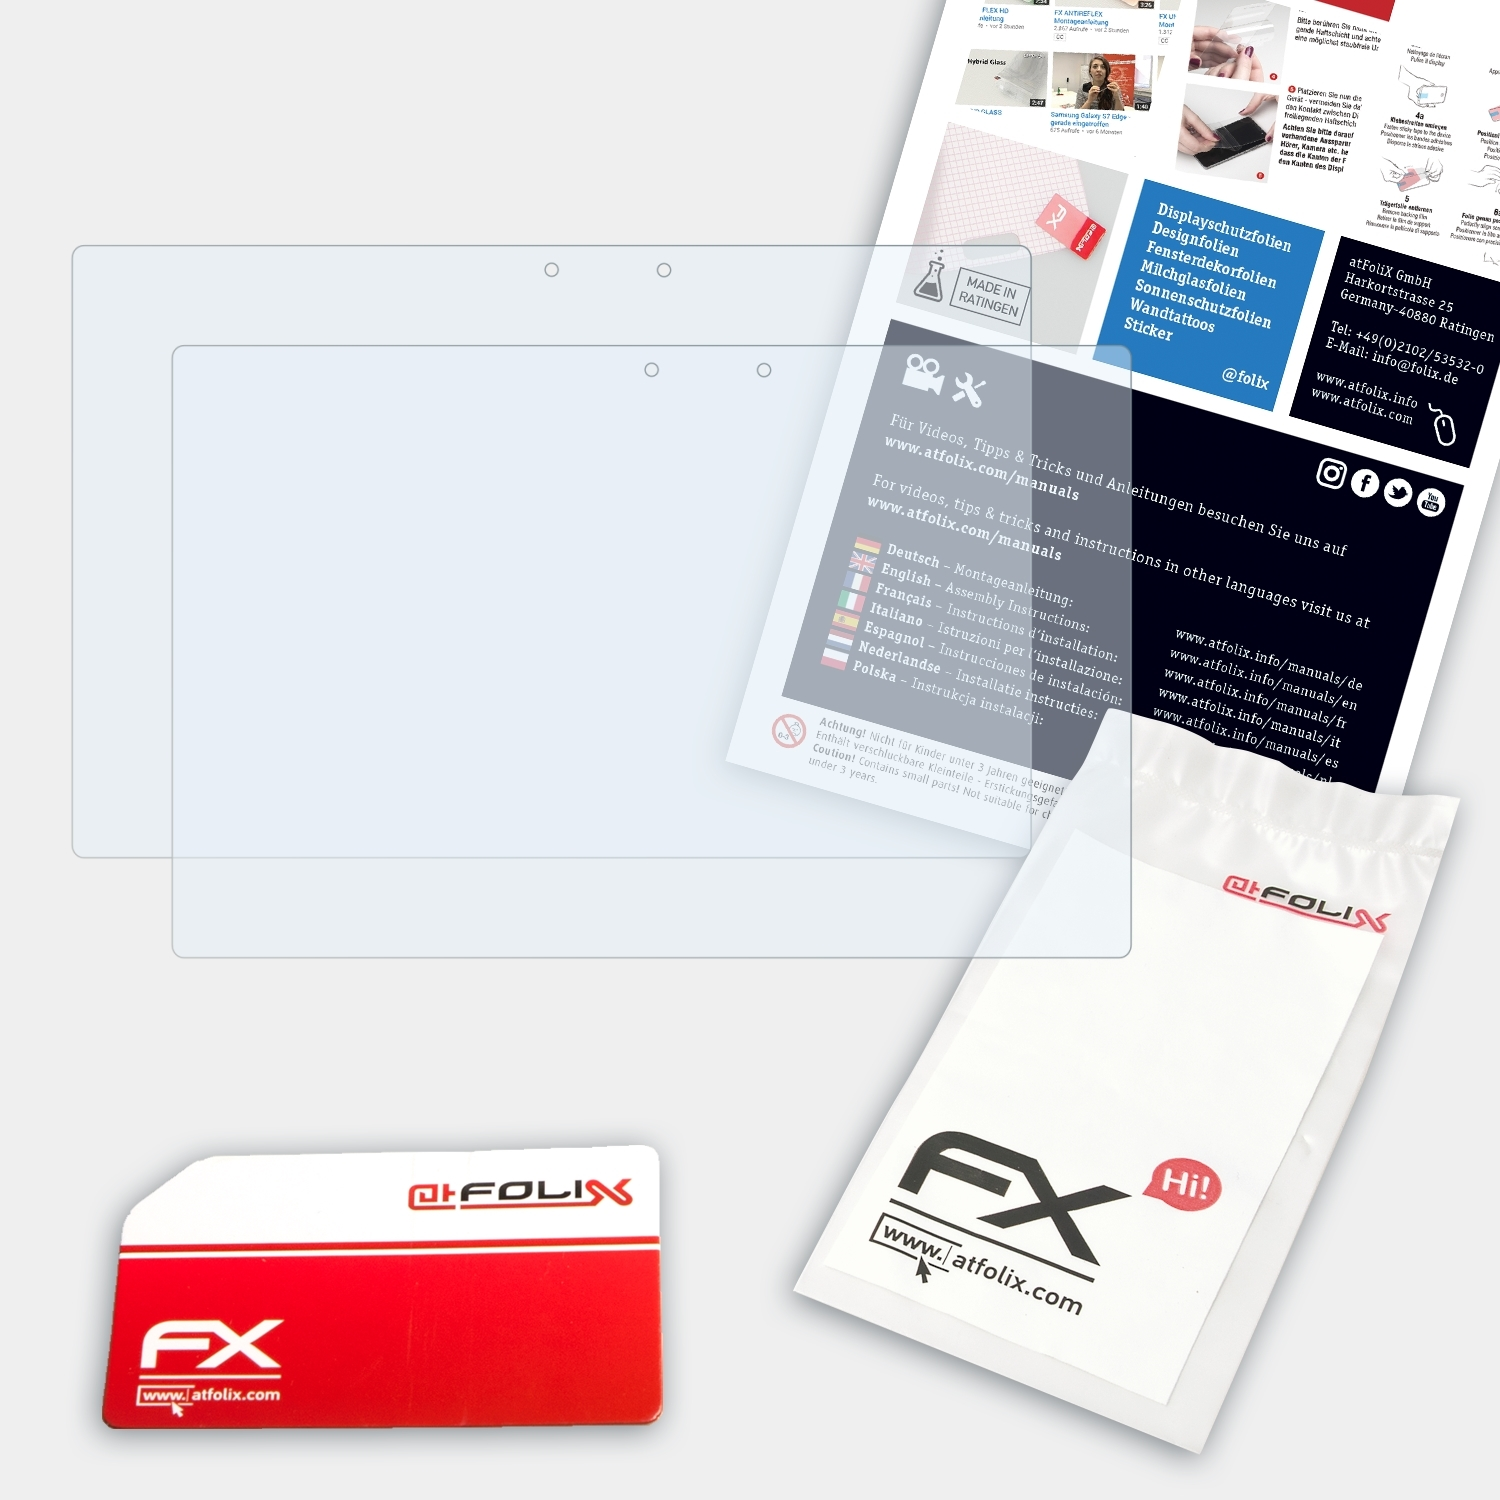 FX-Clear Xperia Tablet Sony Displayschutz(für ATFOLIX Z2) 2x